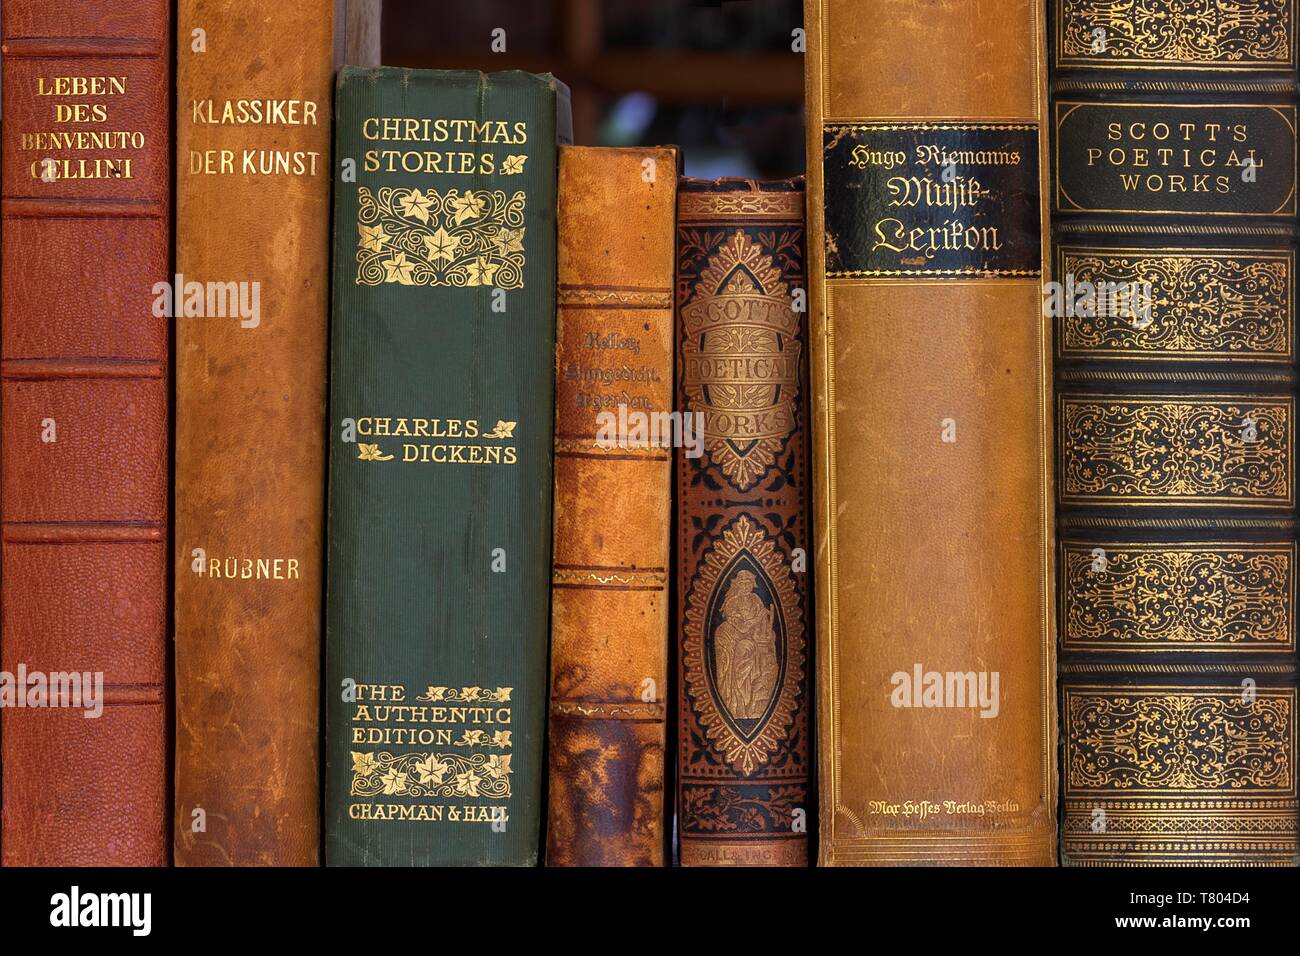 Dos de vieux livres reliés en cuir, classiques, Allemagne Banque D'Images